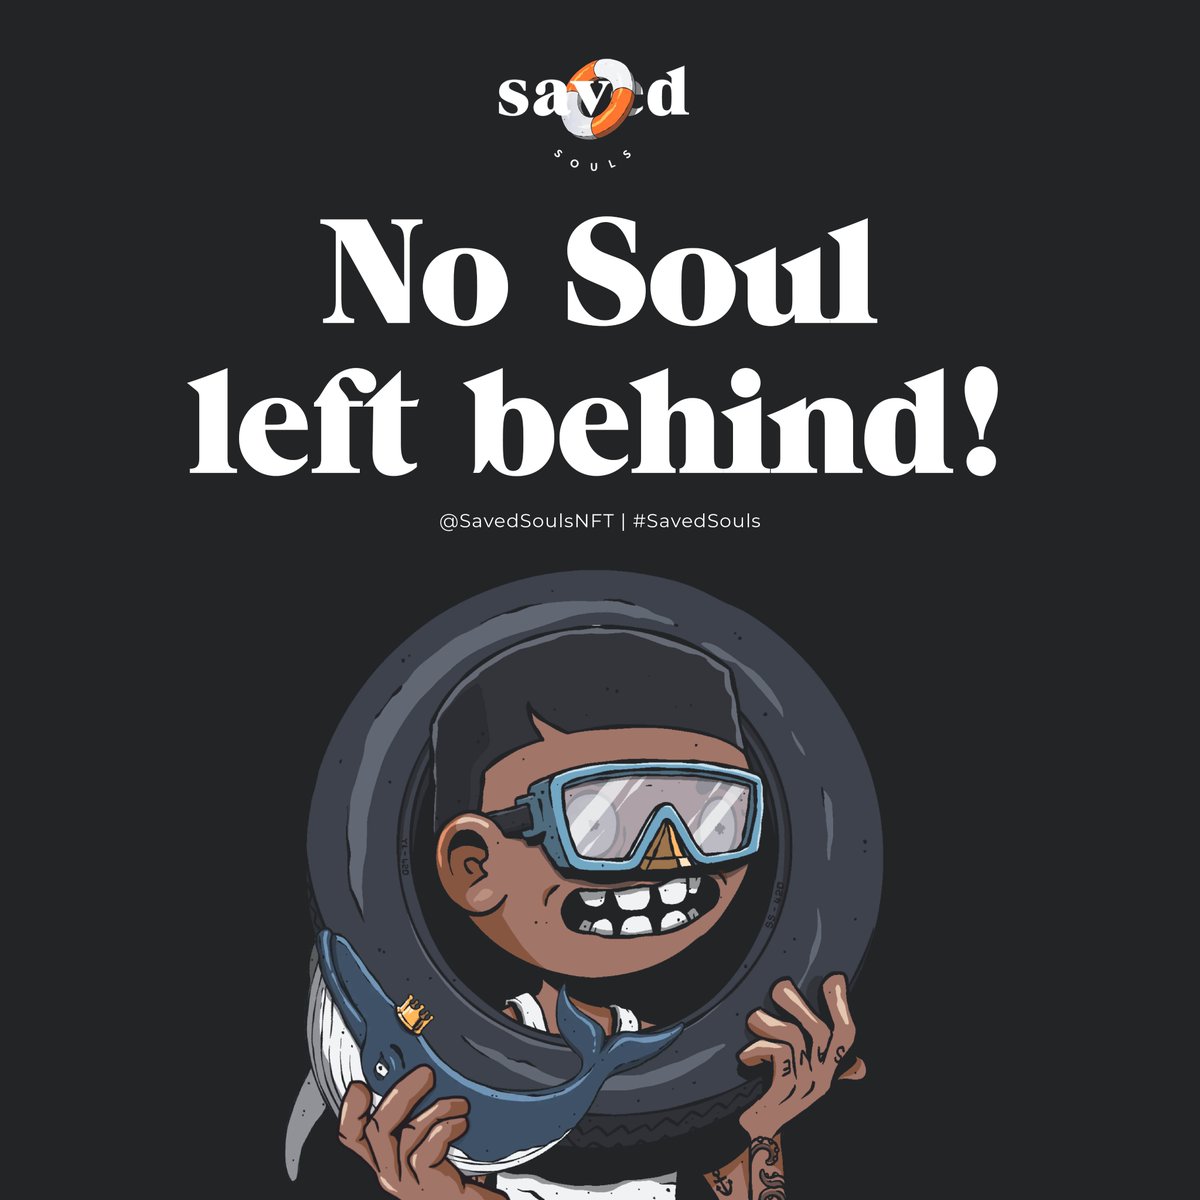 No Soul left behind! 
#SavedSouls